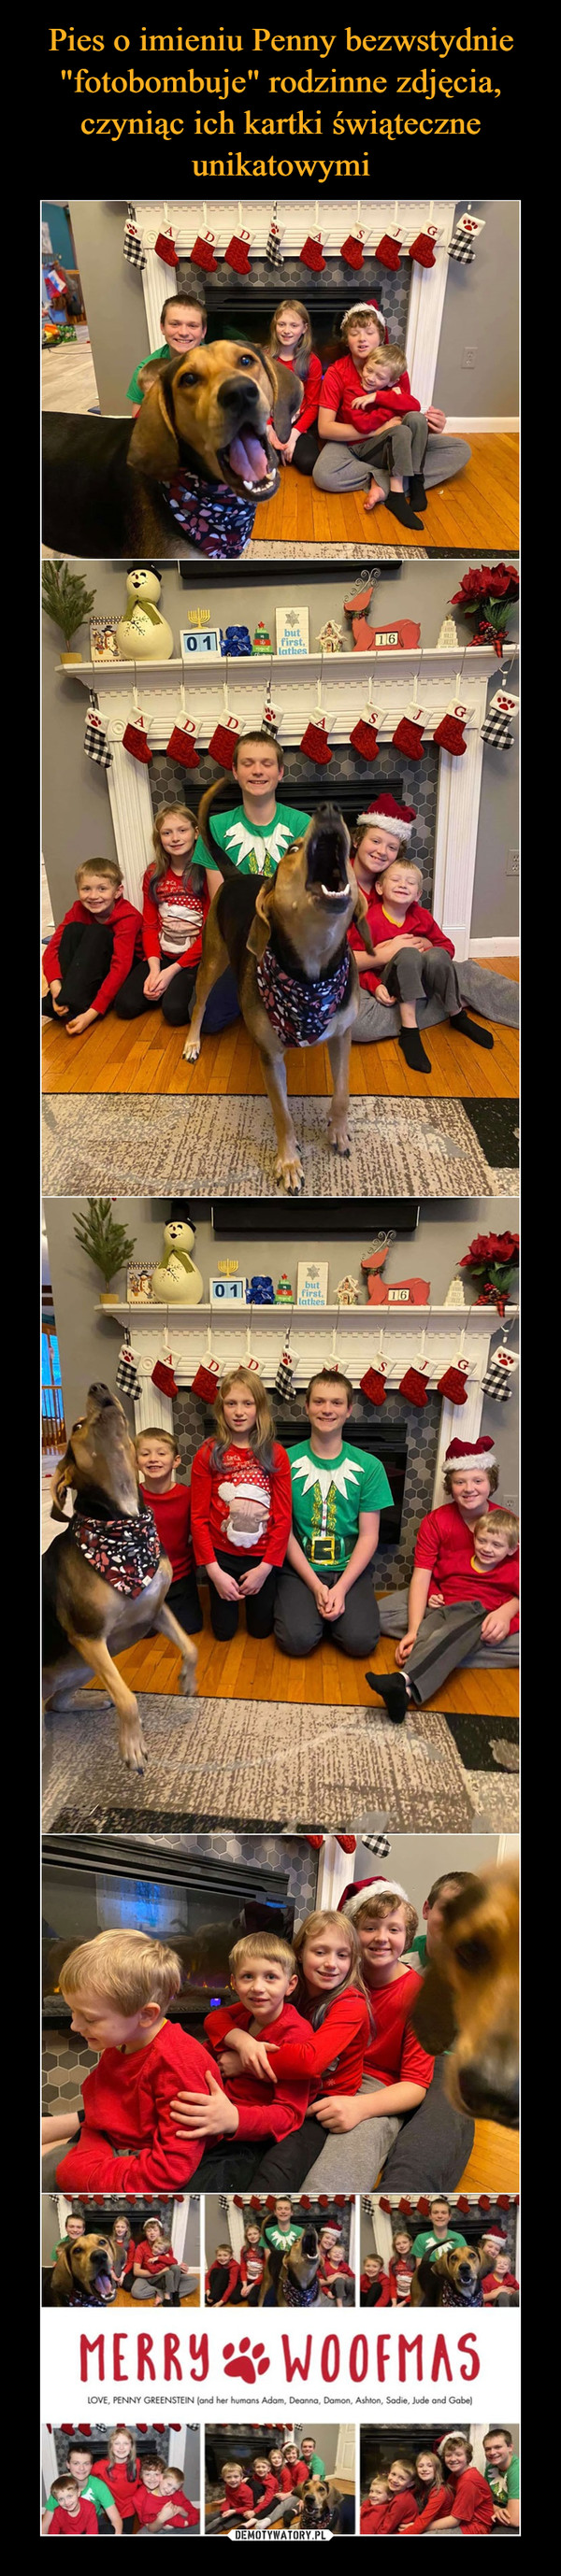 Pies o imieniu Penny bezwstydnie "fotobombuje" rodzinne zdjęcia, czyniąc ich kartki świąteczne unikatowymi